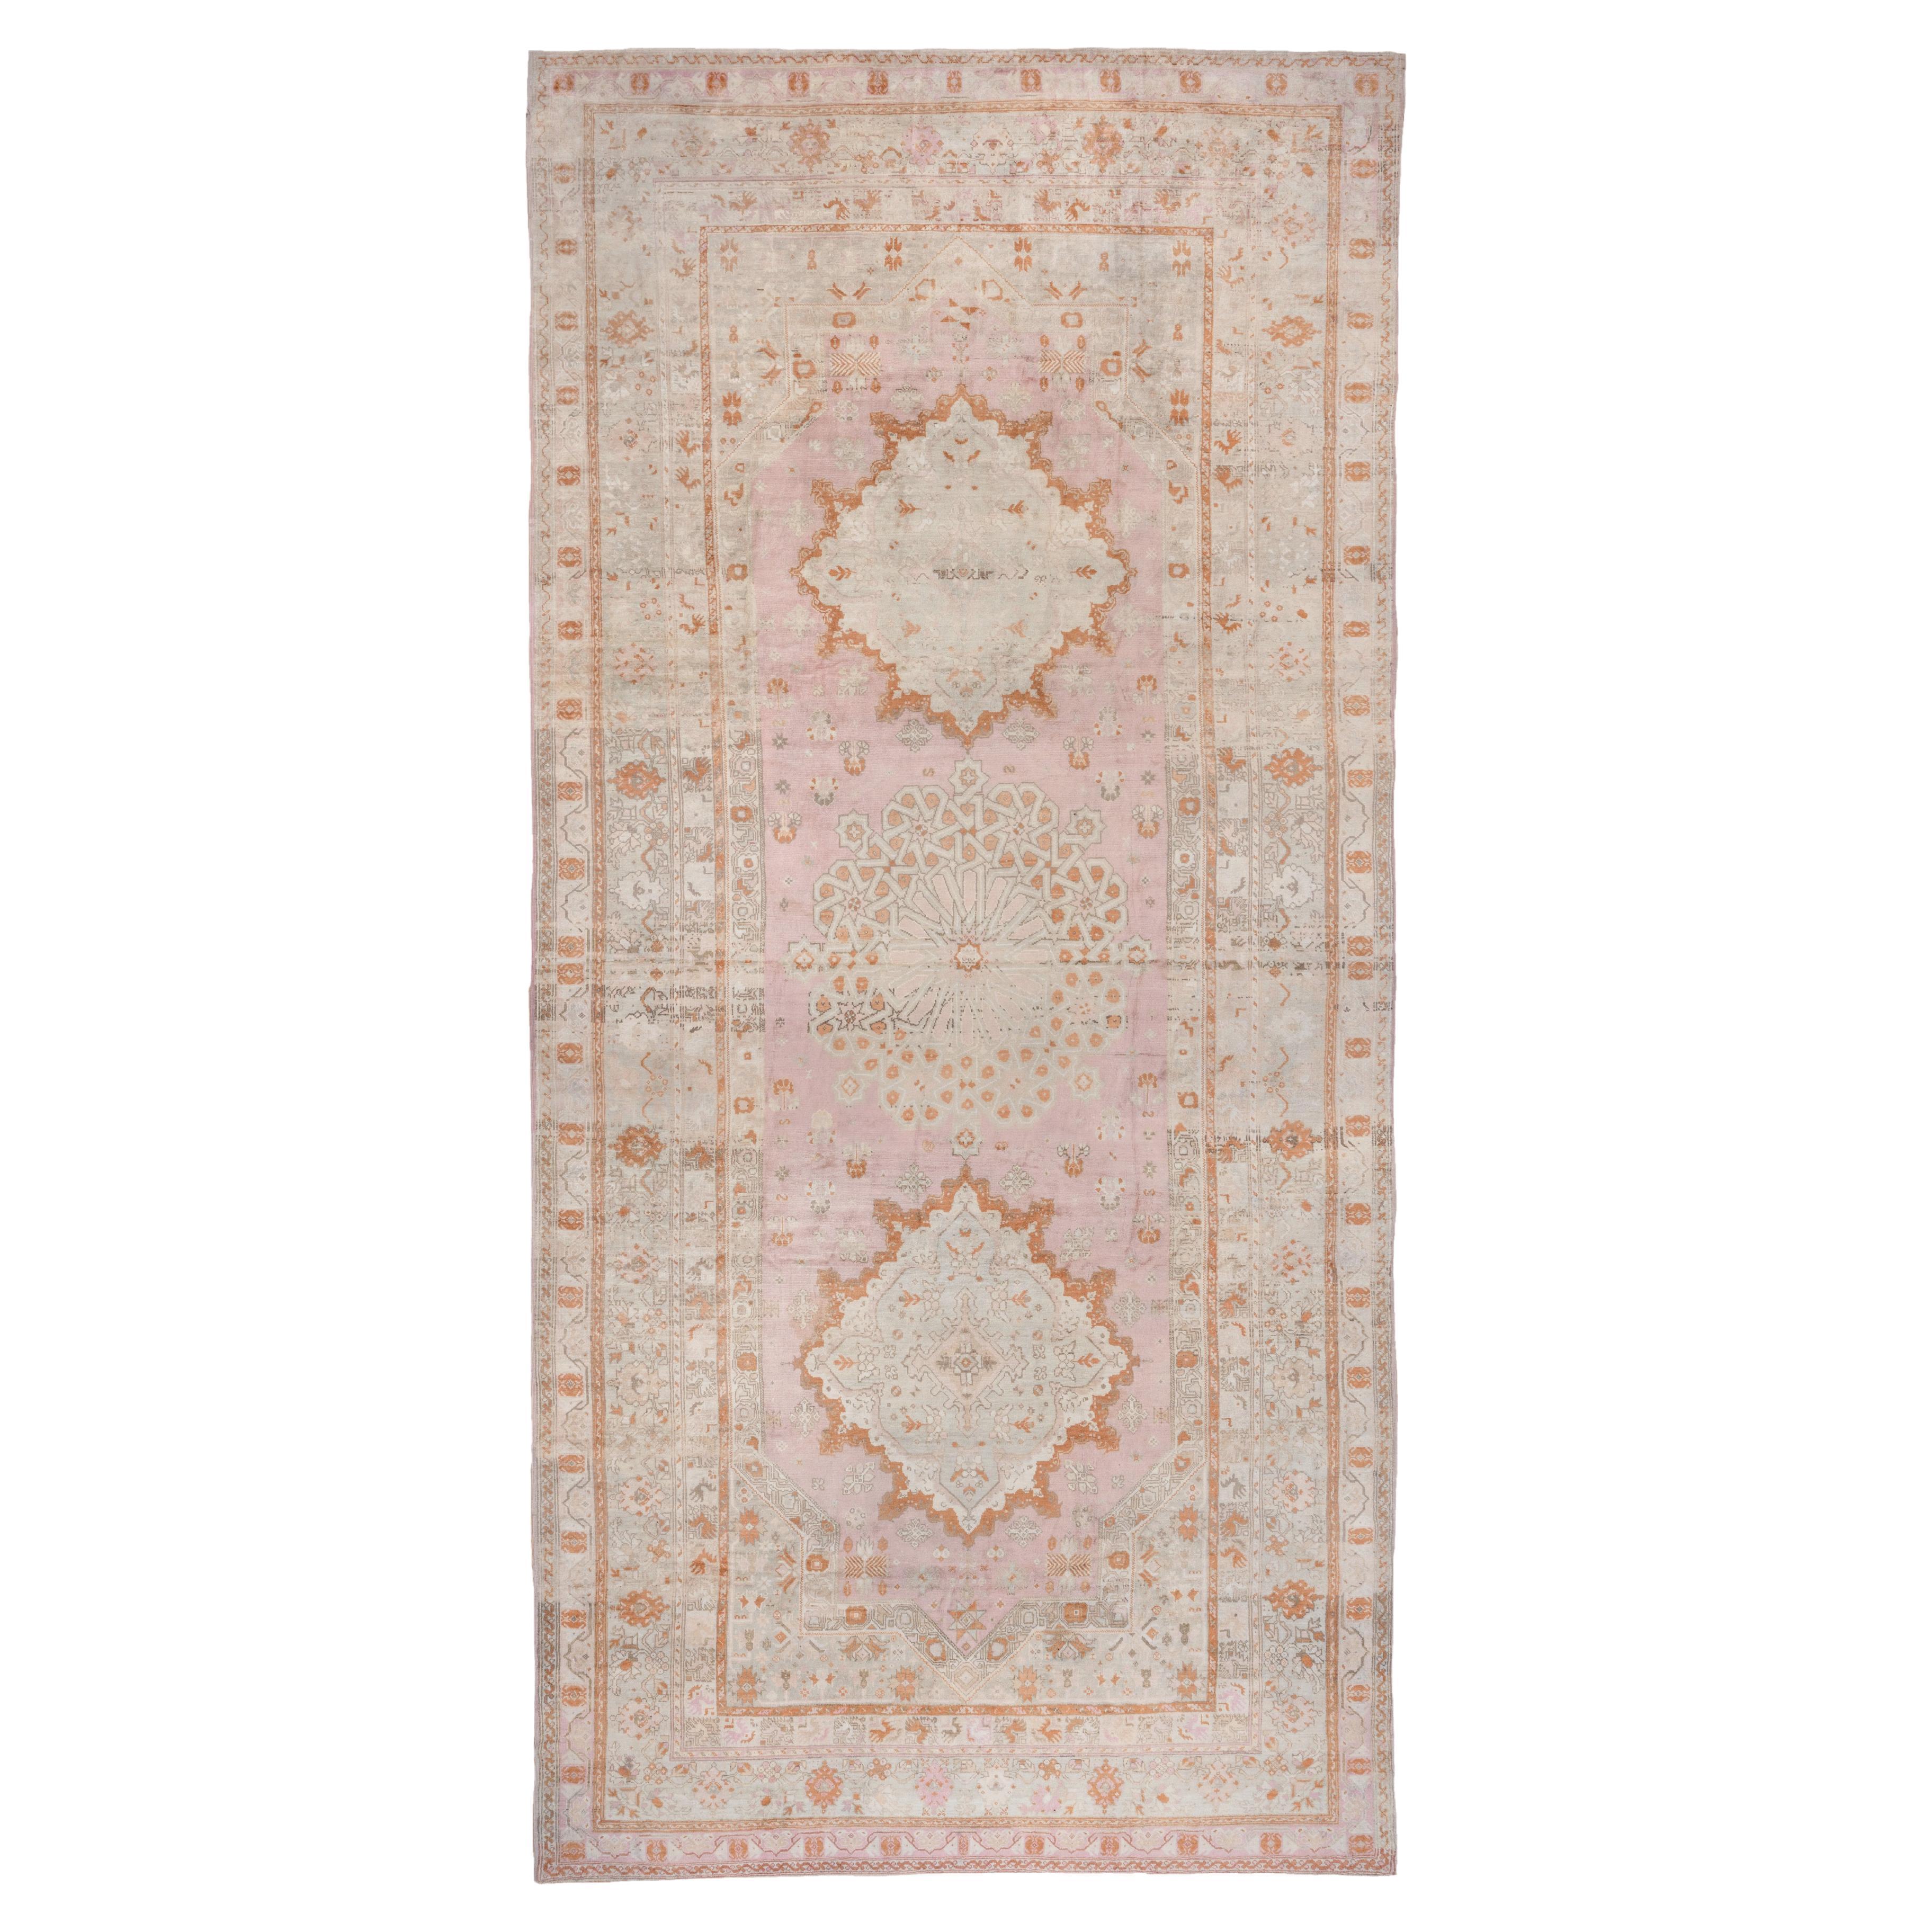 Massive Antique Turkish Oushak Mansion Carpet, Pink, Ivory & Orange Tones For Sale